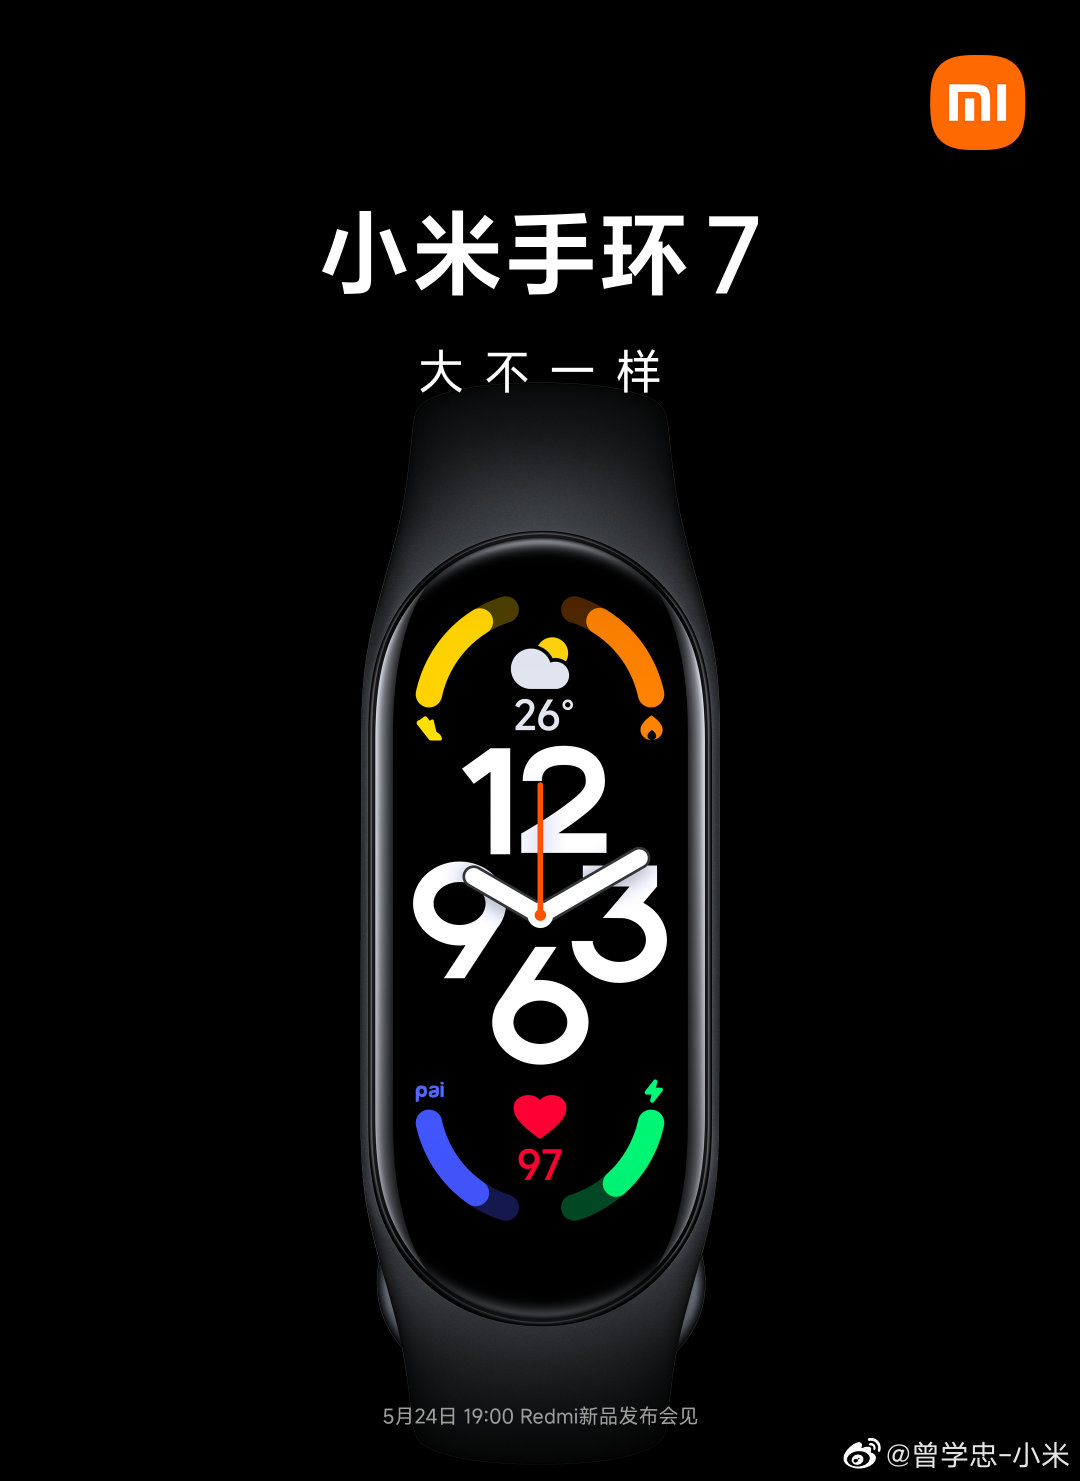 opaska Xiaomi Mi Band 7 cena data premiery specyfikacja